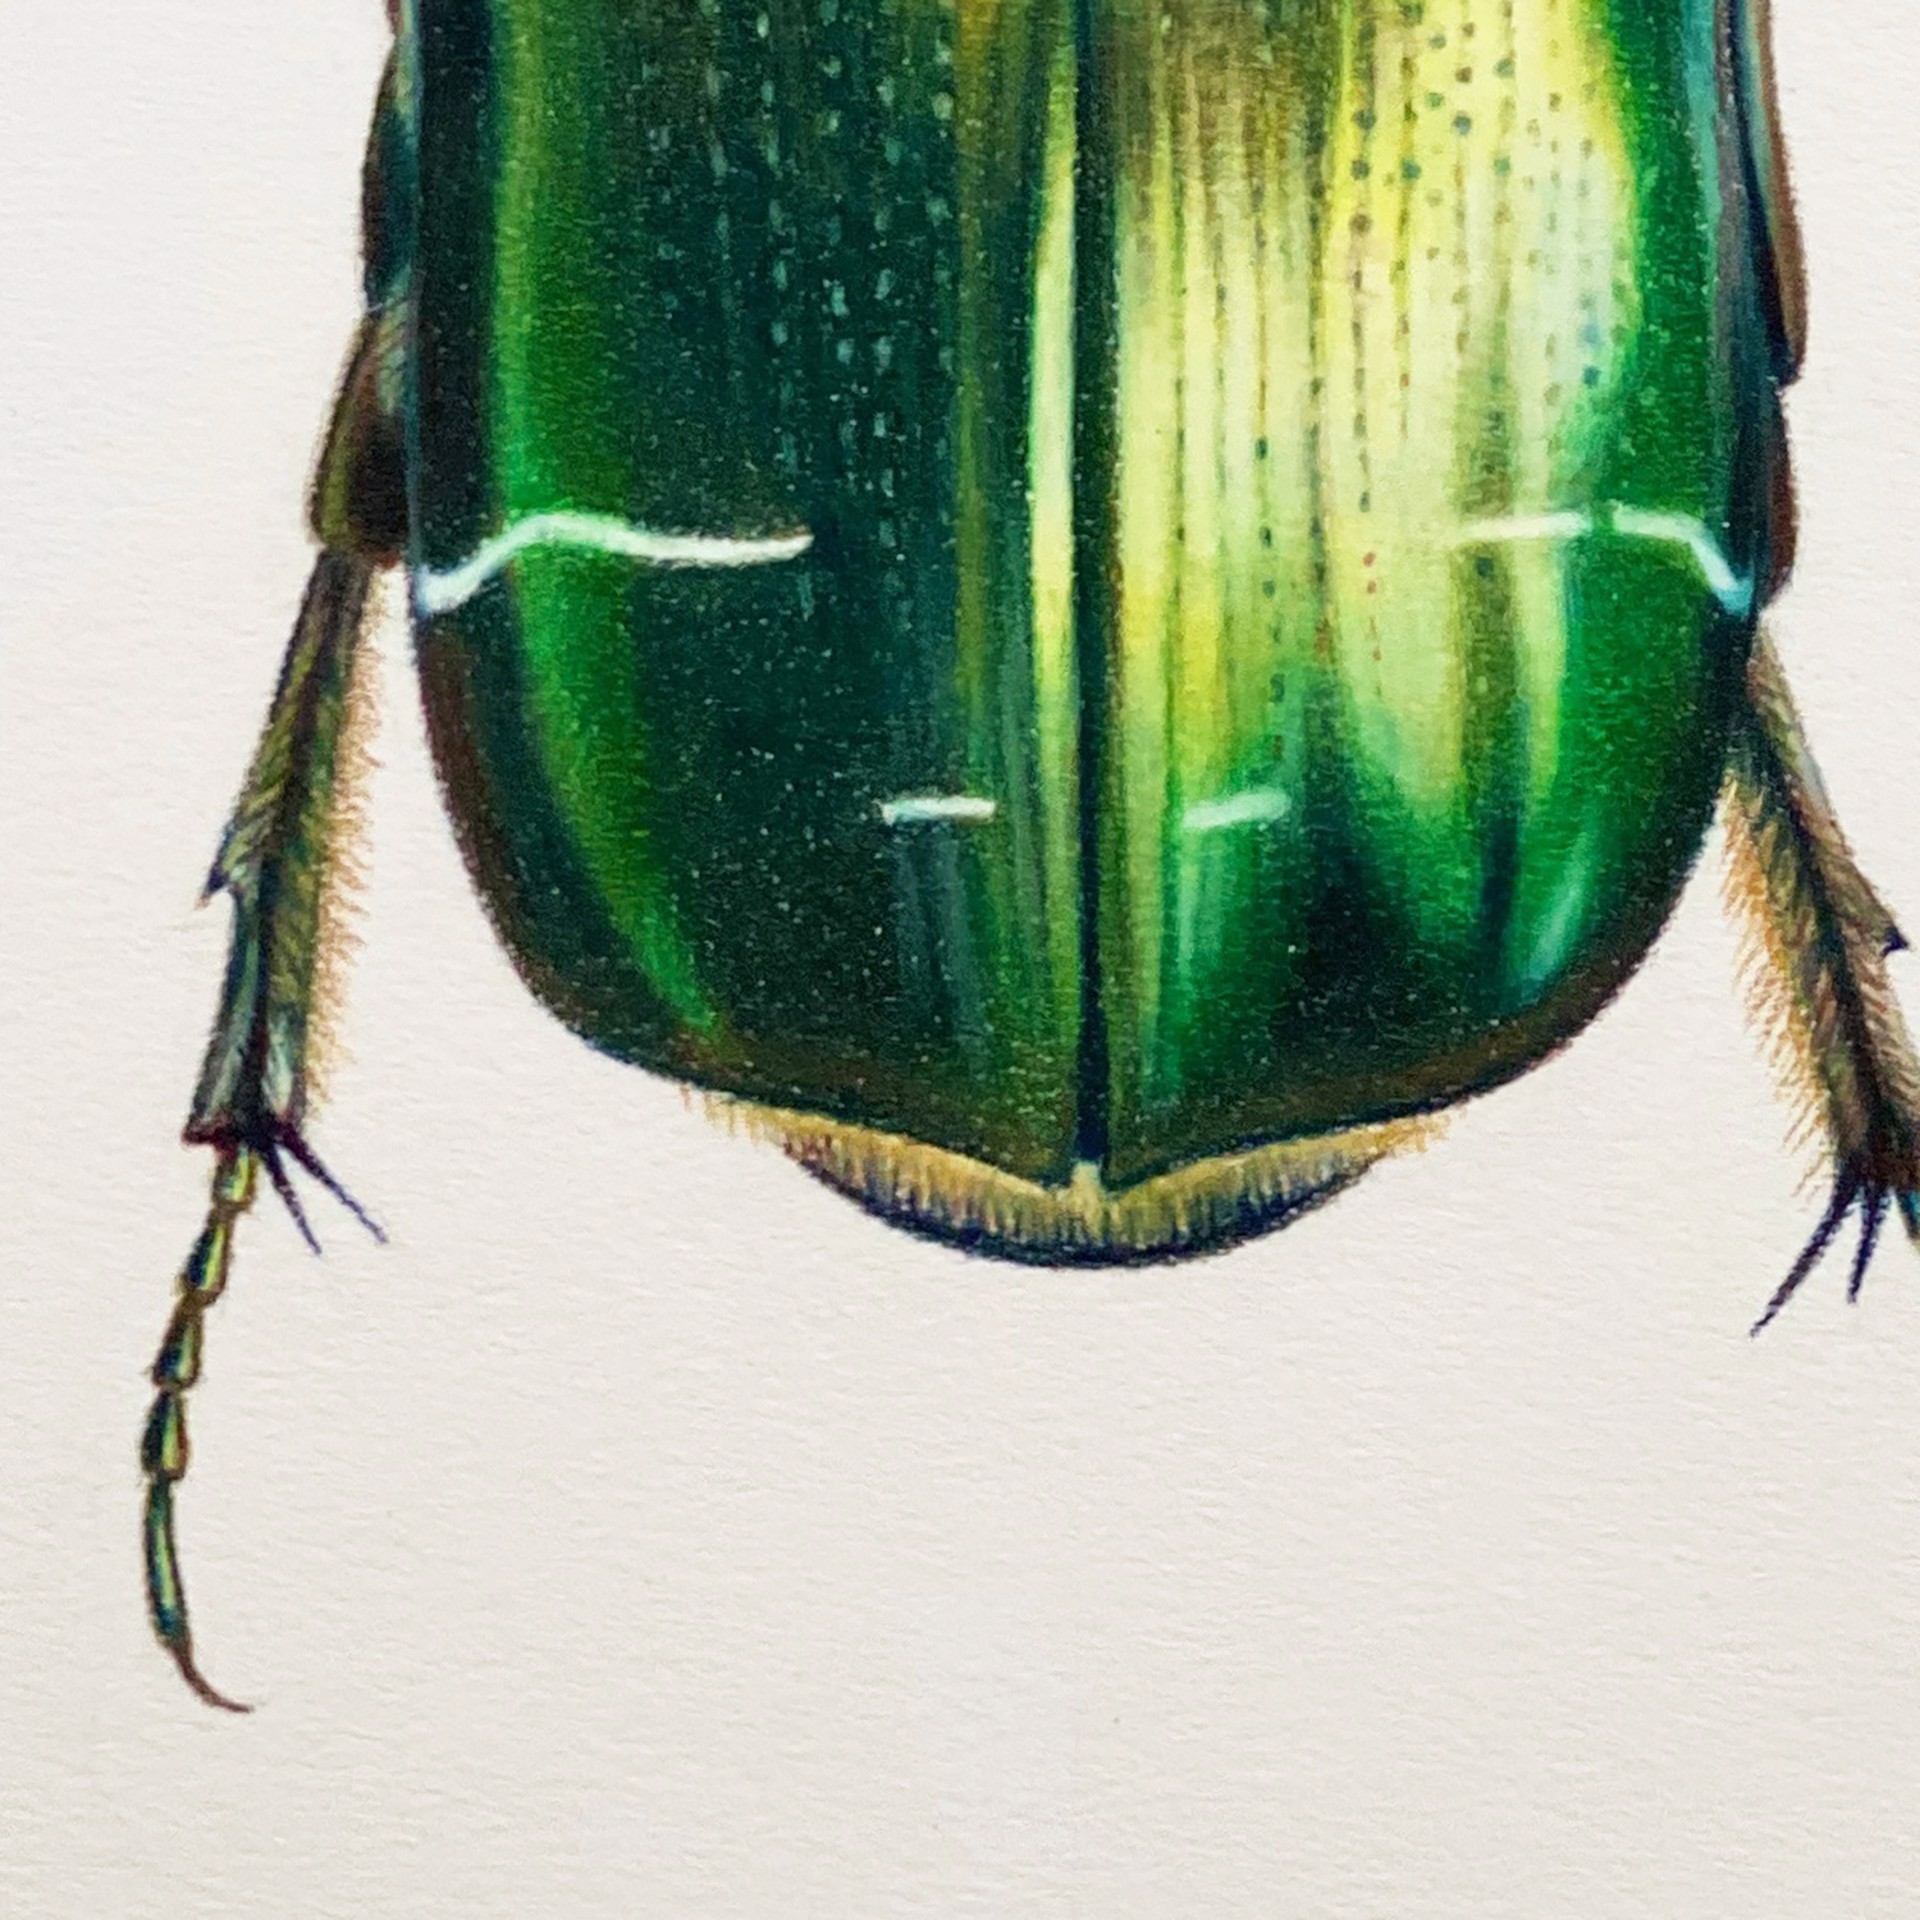 Coleoptera Chroma #26 by Hannah Hanlon